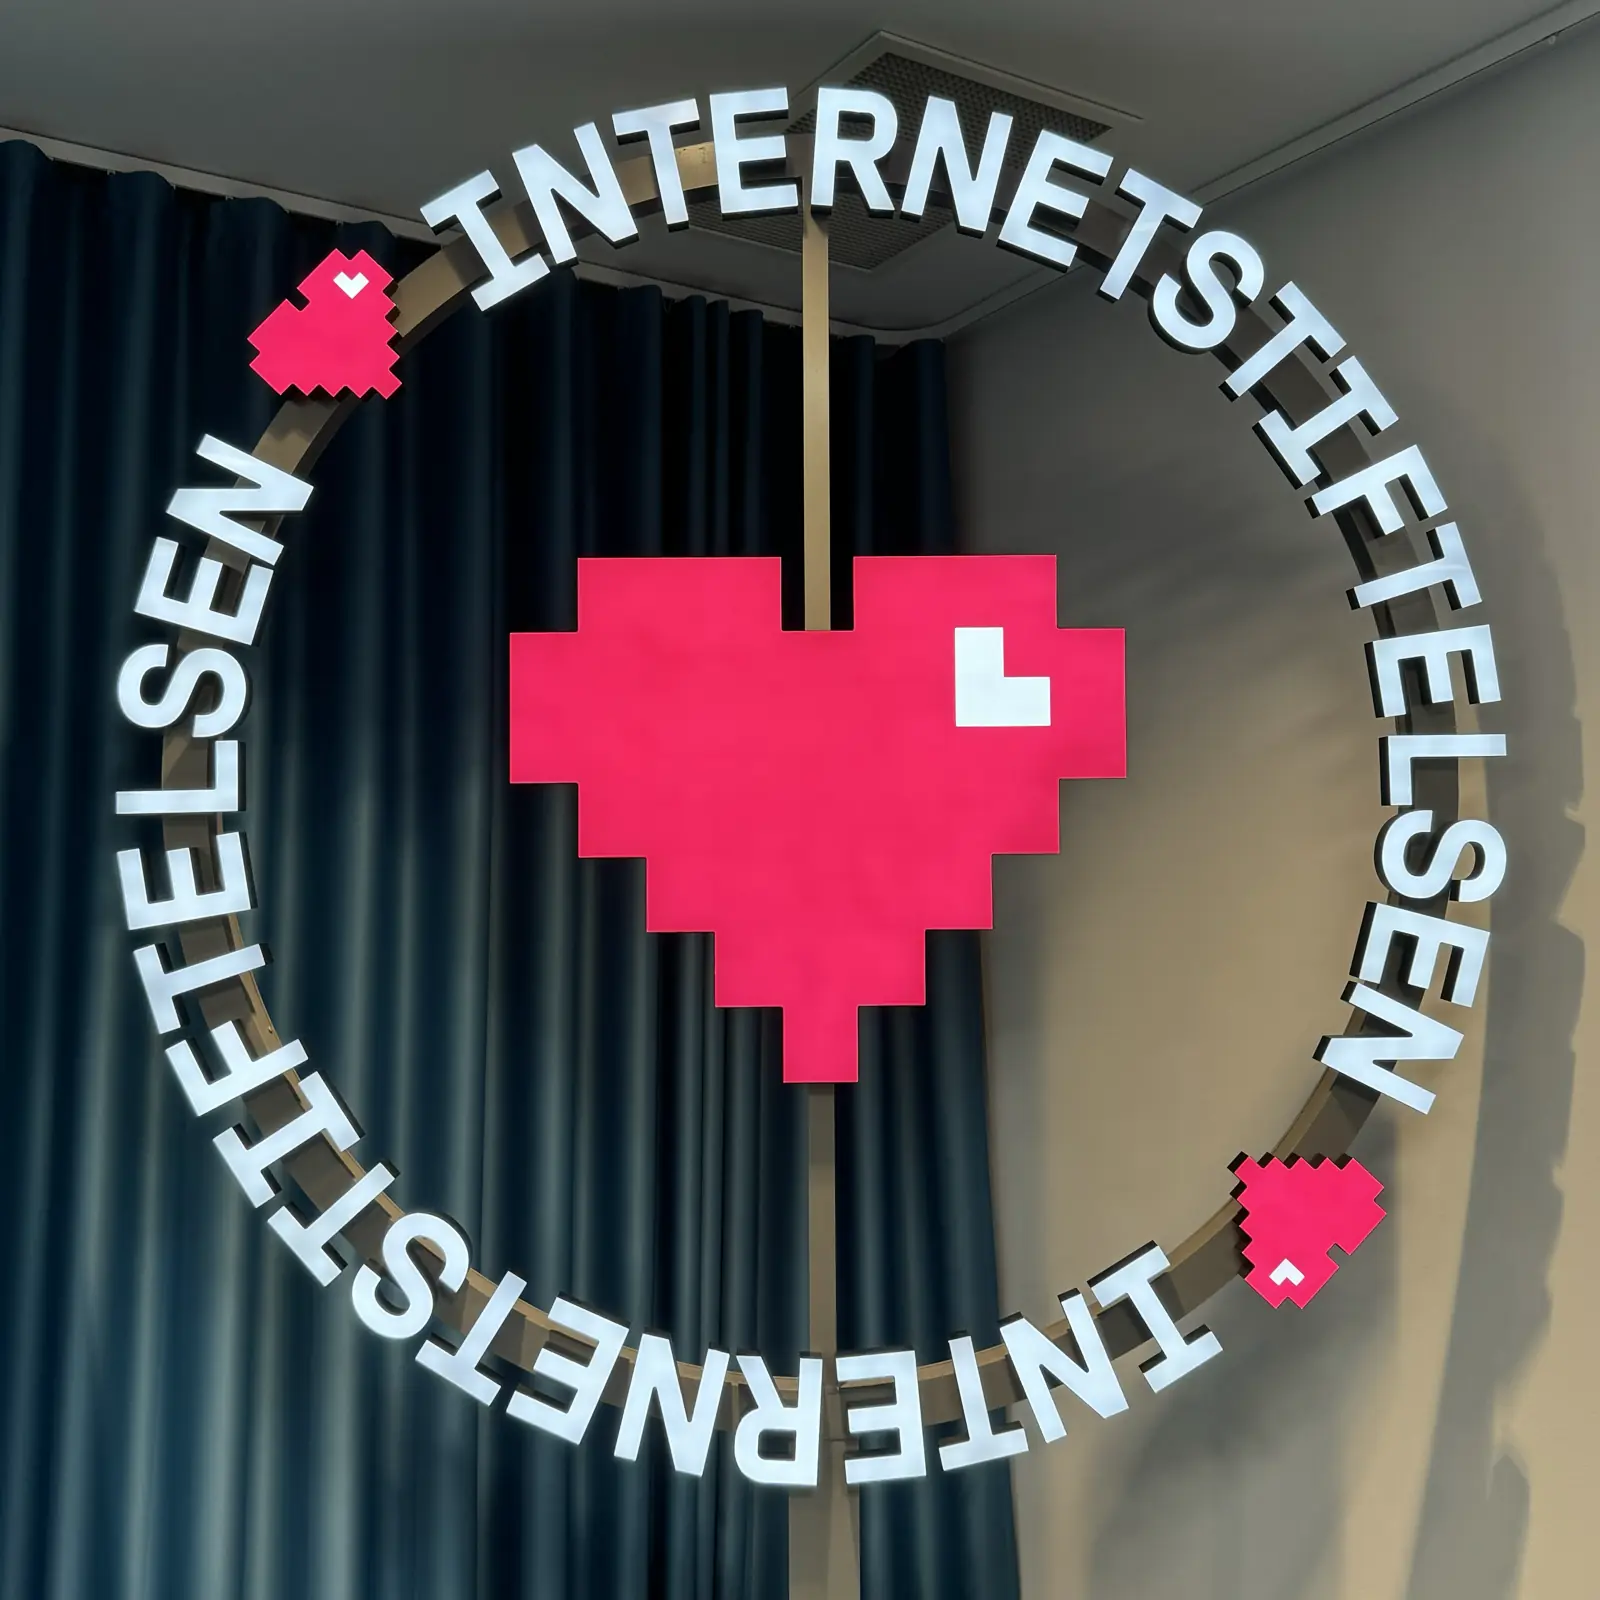 Internetstiftelsen and pixel heart sign